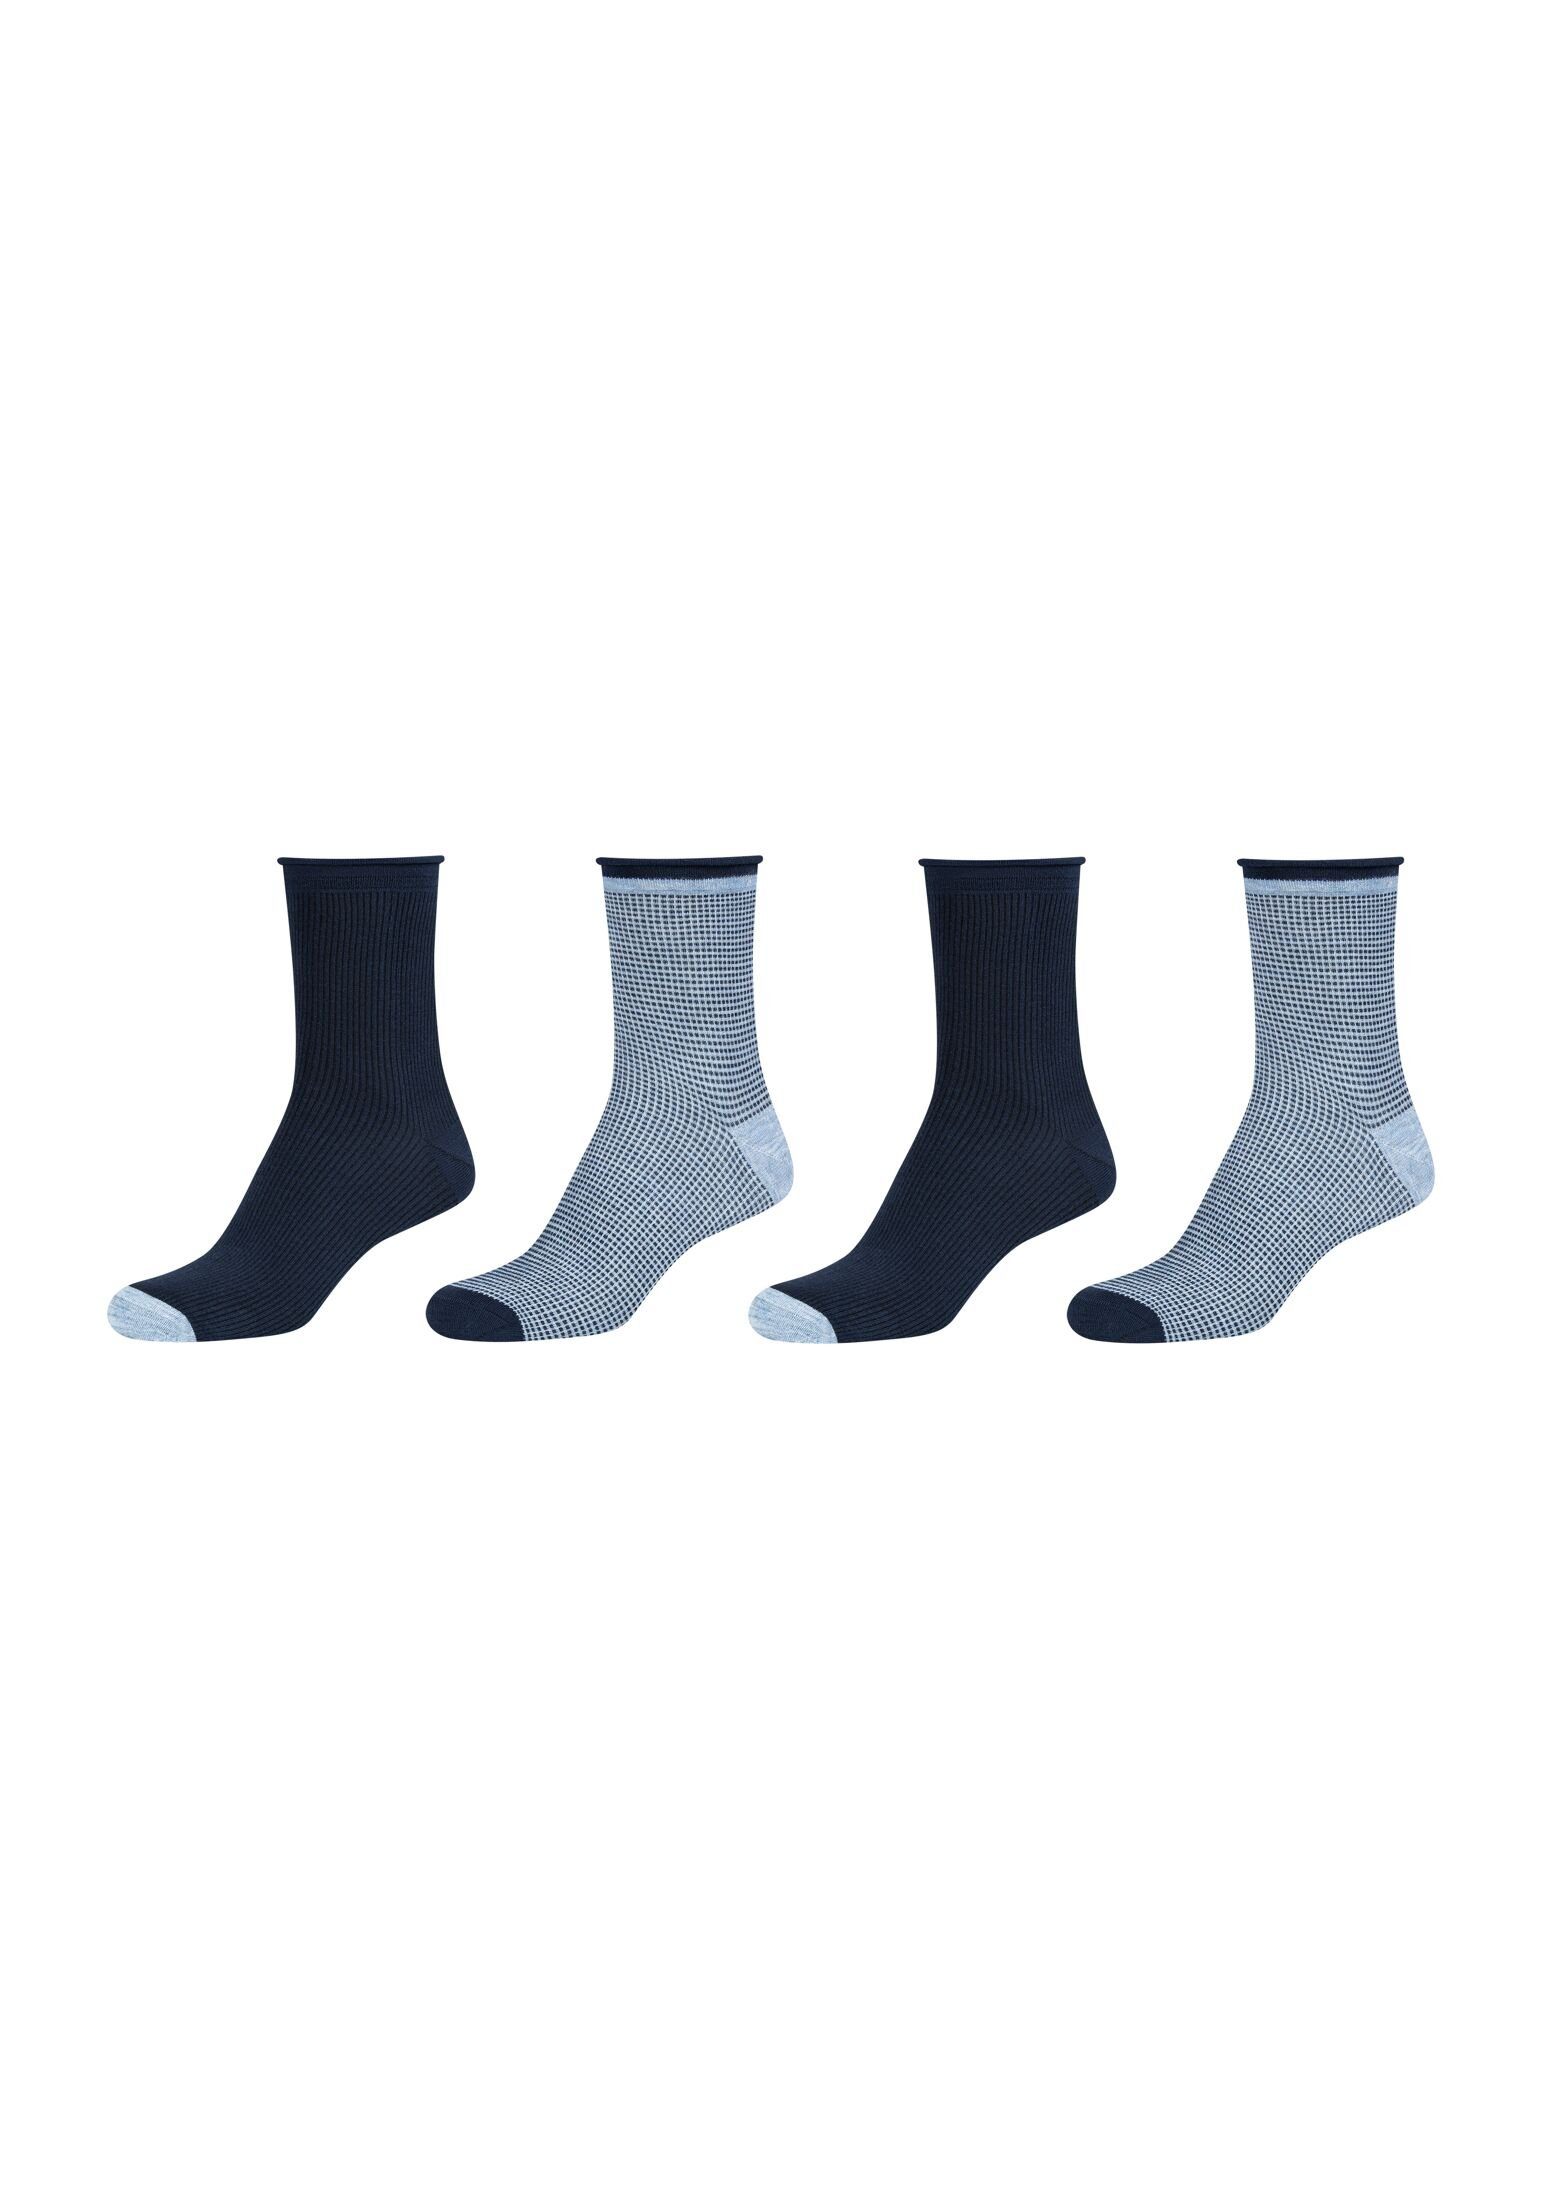 Camano Socken Socken melange stone 4er Pack